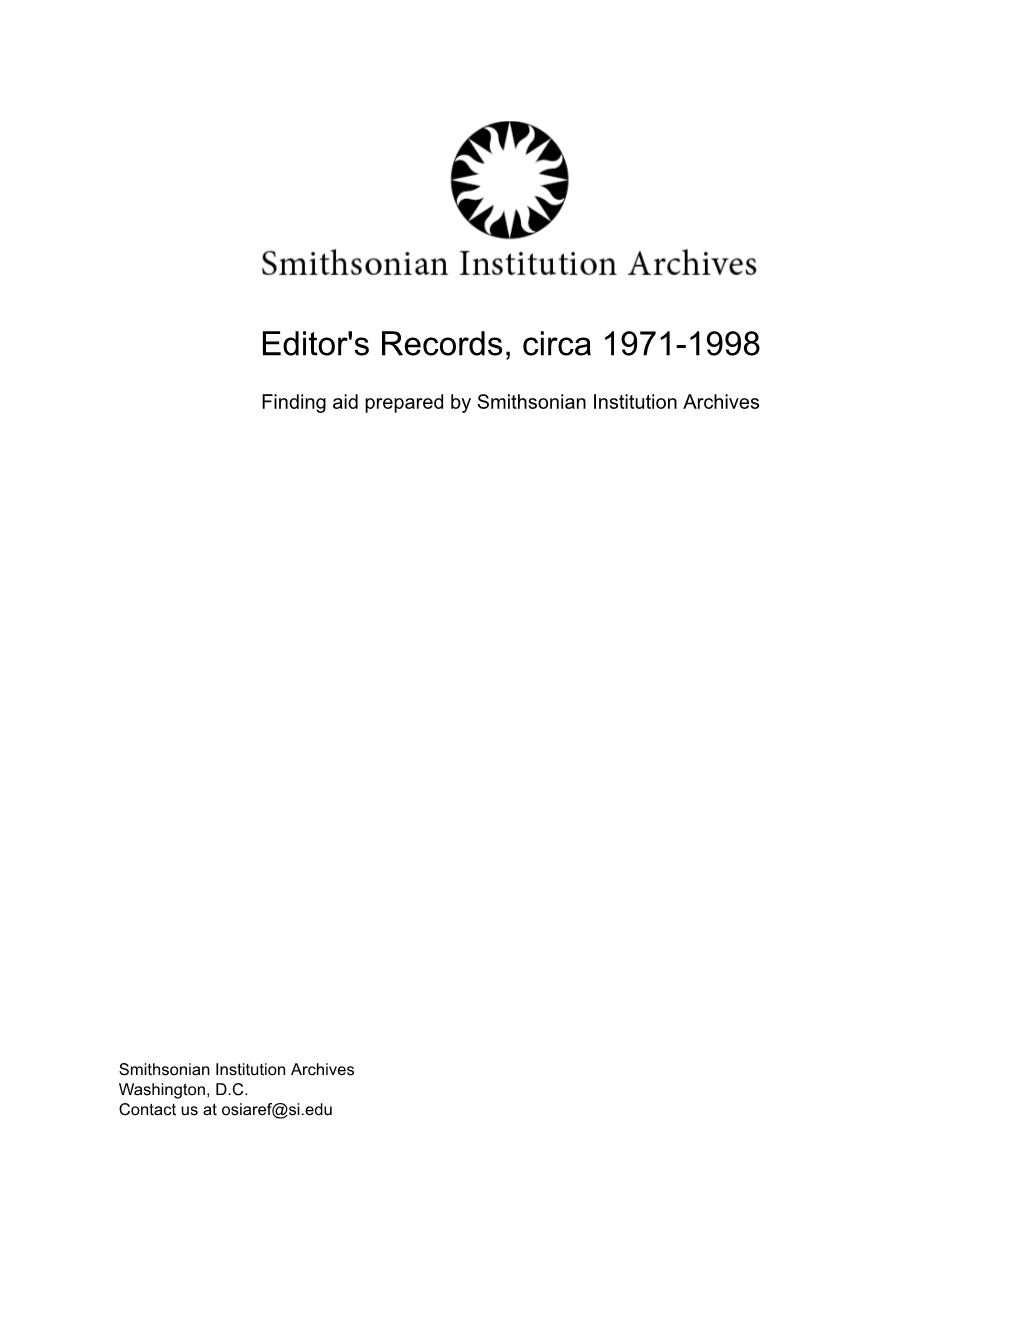 Editor's Records, Circa 1971-1998